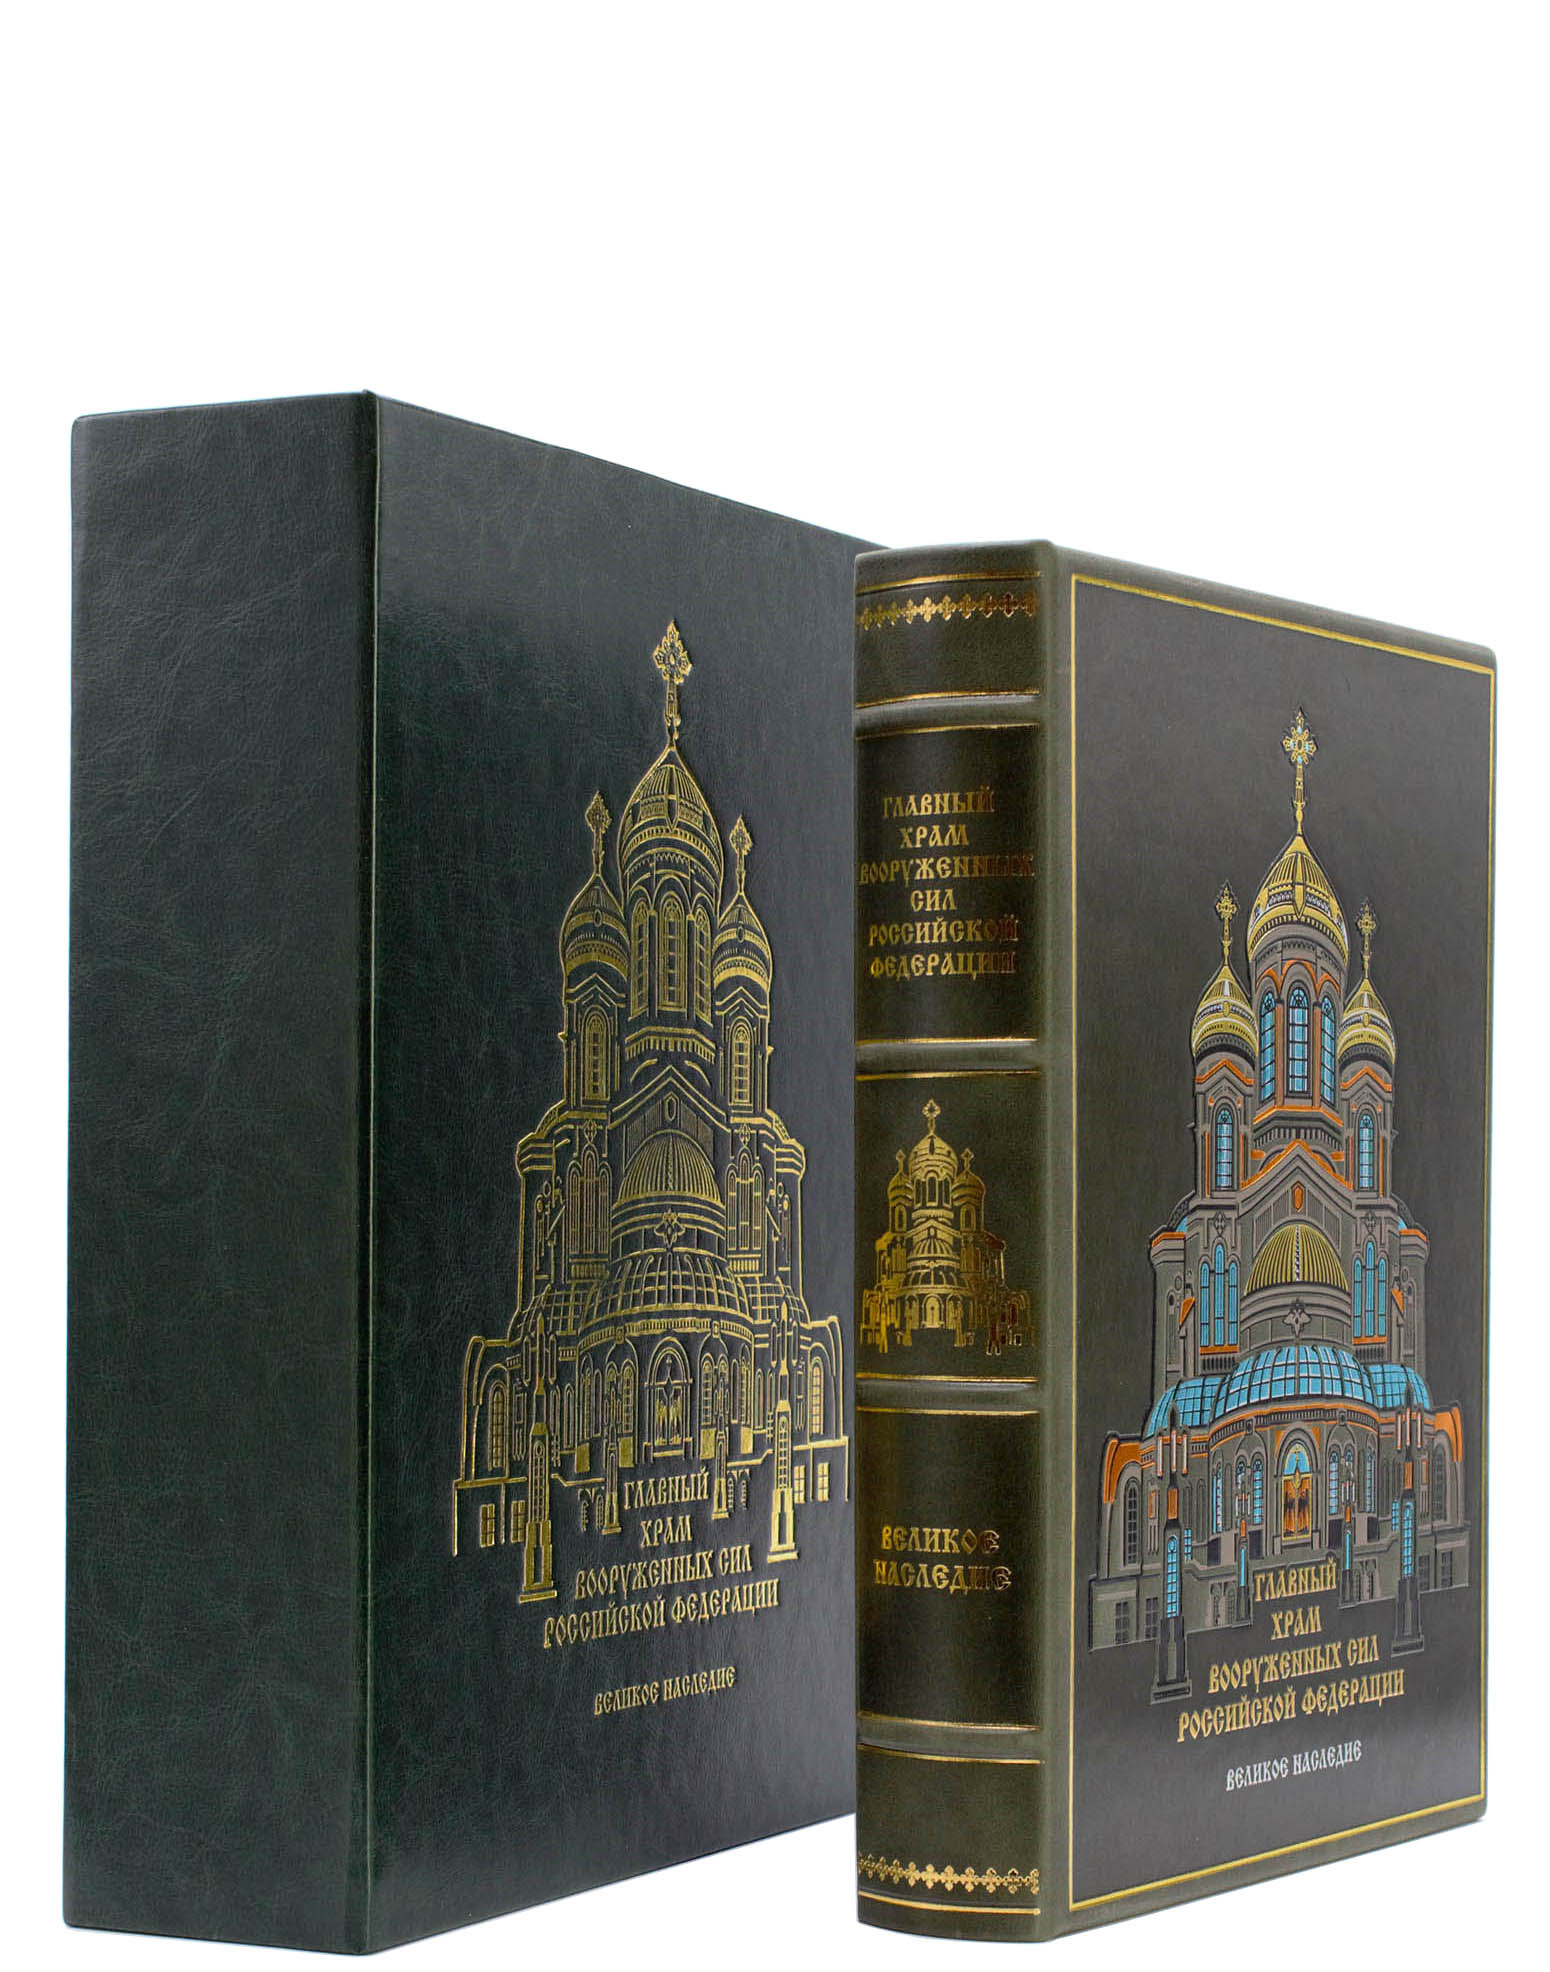 Главный храм Вооруженных Сил Российской Федерации (подарочное издание)